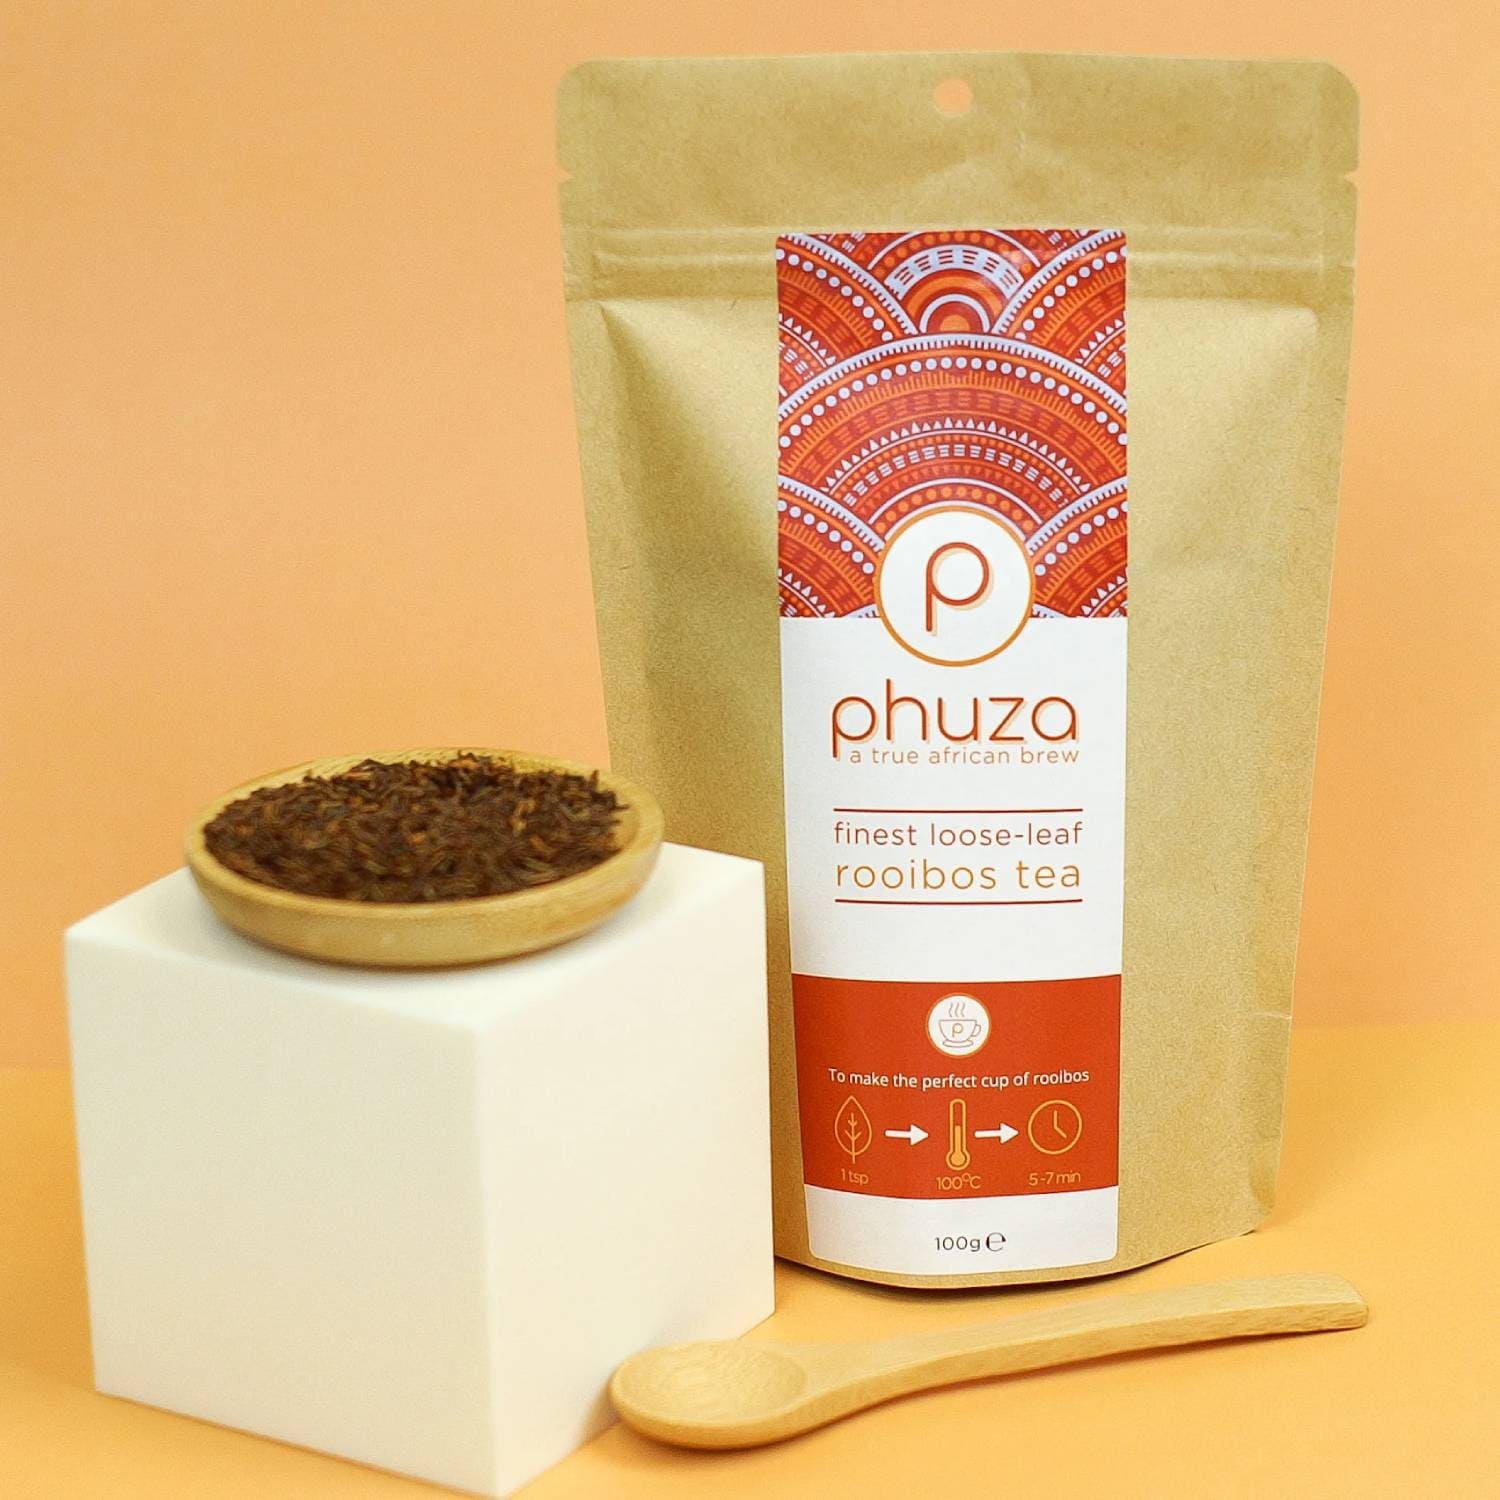 Phuza Finest Loose Leaf Rooibos Tea